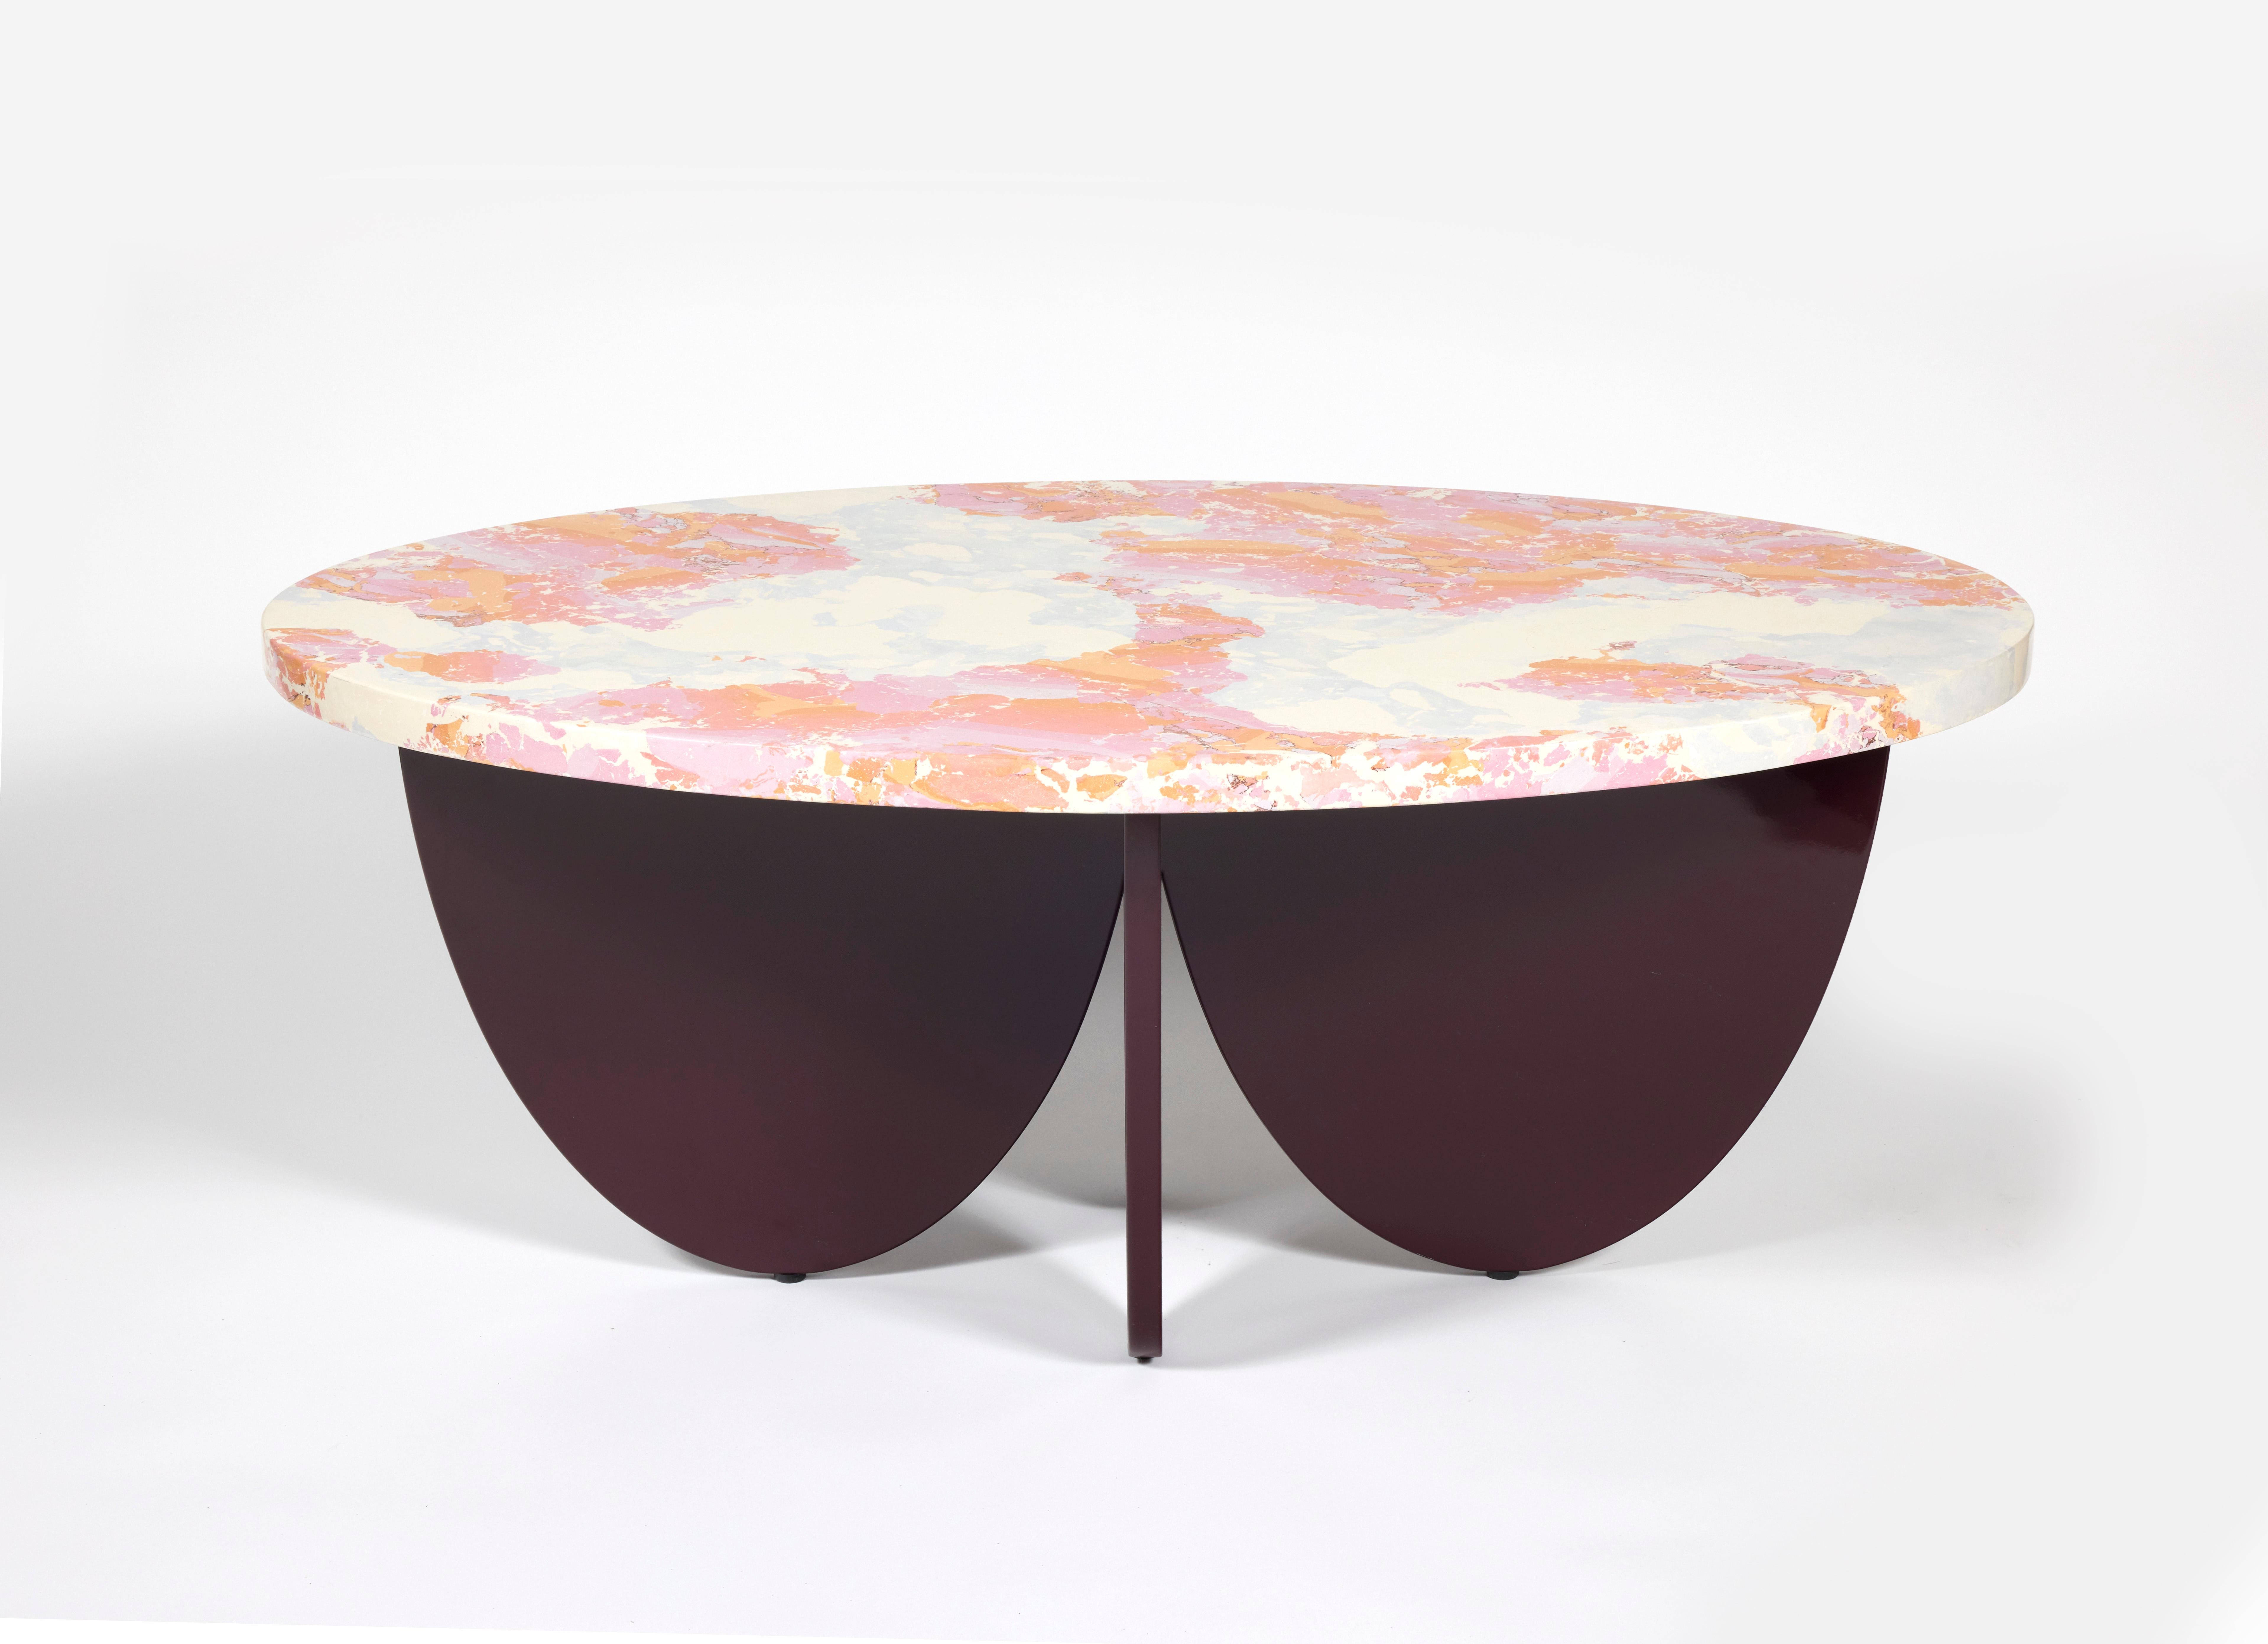 Dieser niedrige Tisch wurde für eine Ausstellung im Pariser Showroom von Manuel Canovas entworfen.
Die Tischplatte wurde von der Künstlerin Amandine Antunez in Stucco Veneziano in Rot- und Elfenbeintönen ausgeführt.
Die Platte wird durch einen